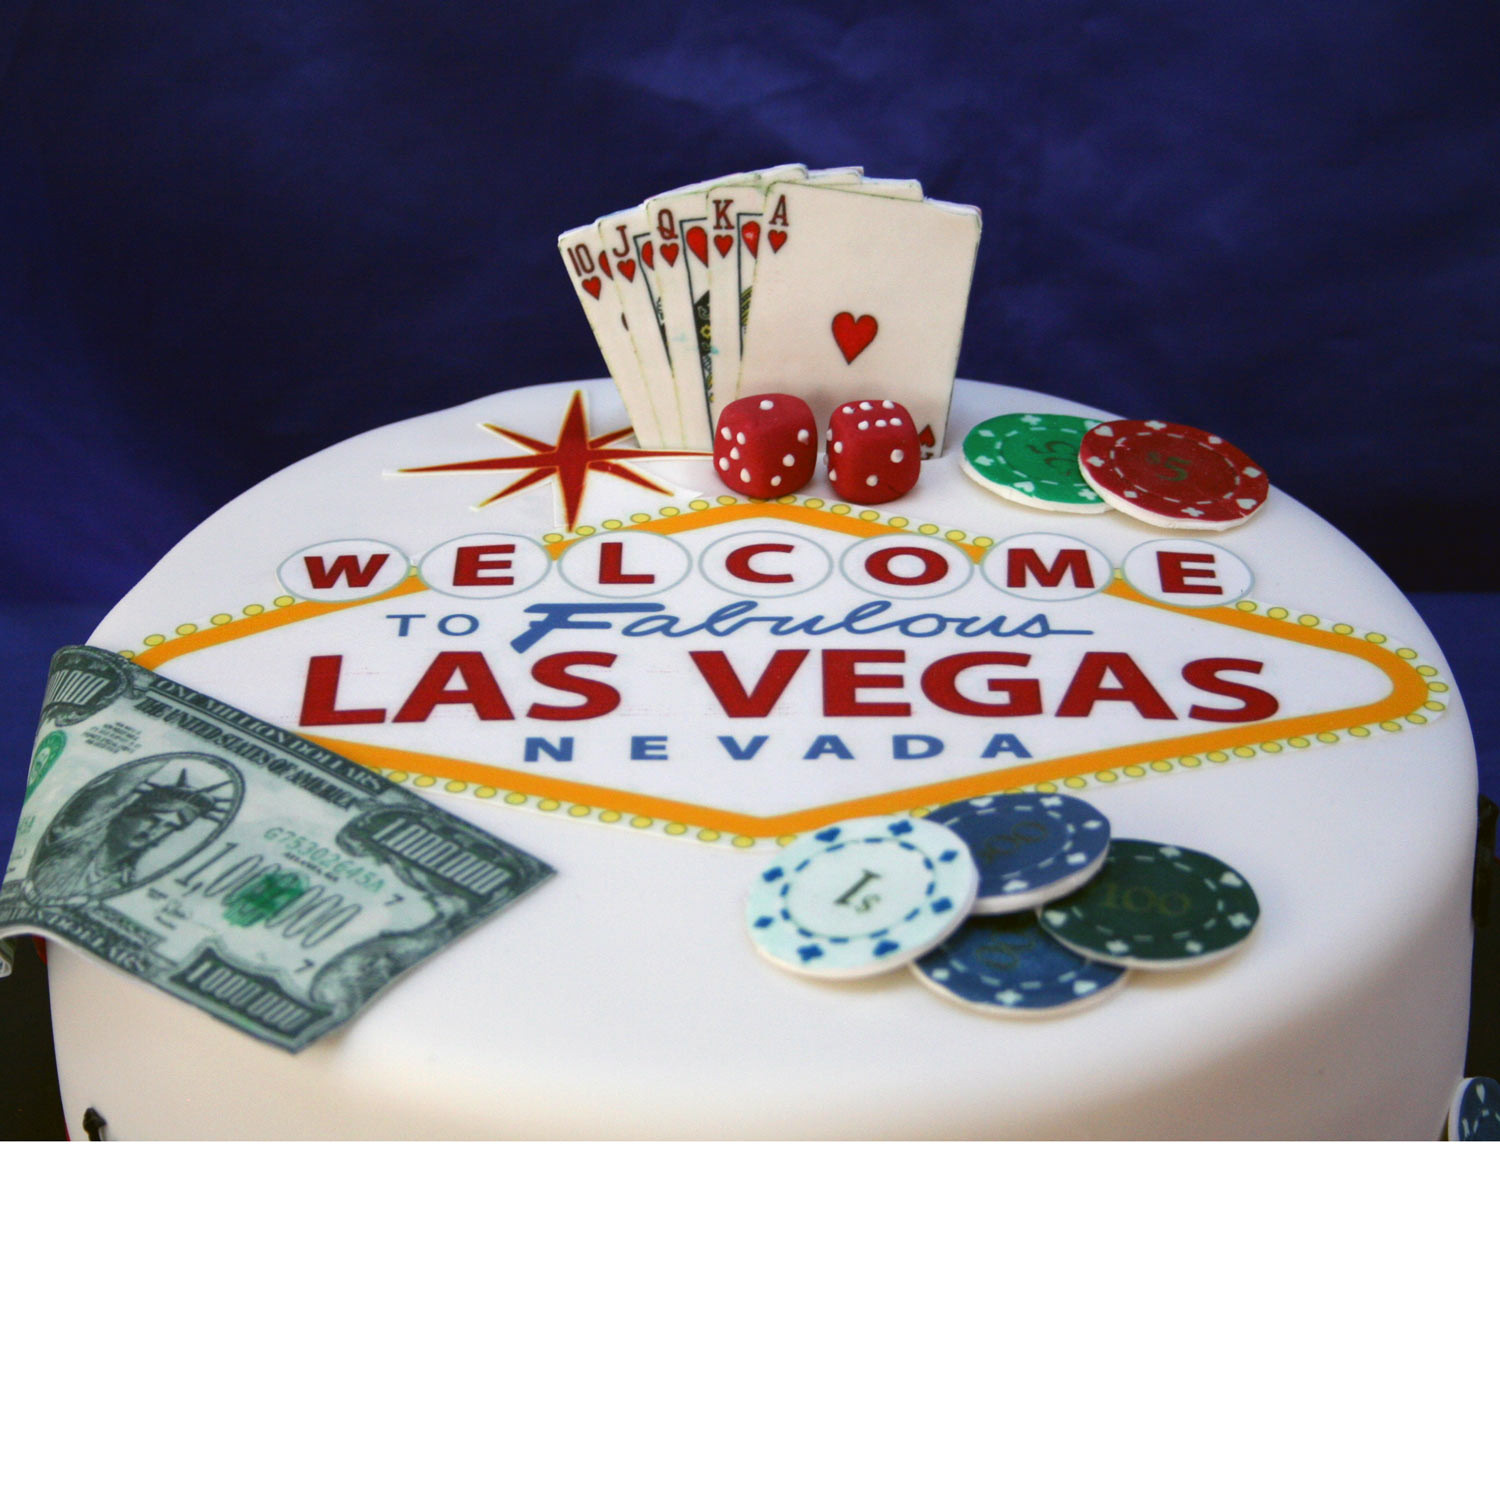 Las Vegas Birthday Cakes
 Las Vegas Birthday Cake Las Vegas Themed Birthday Cake